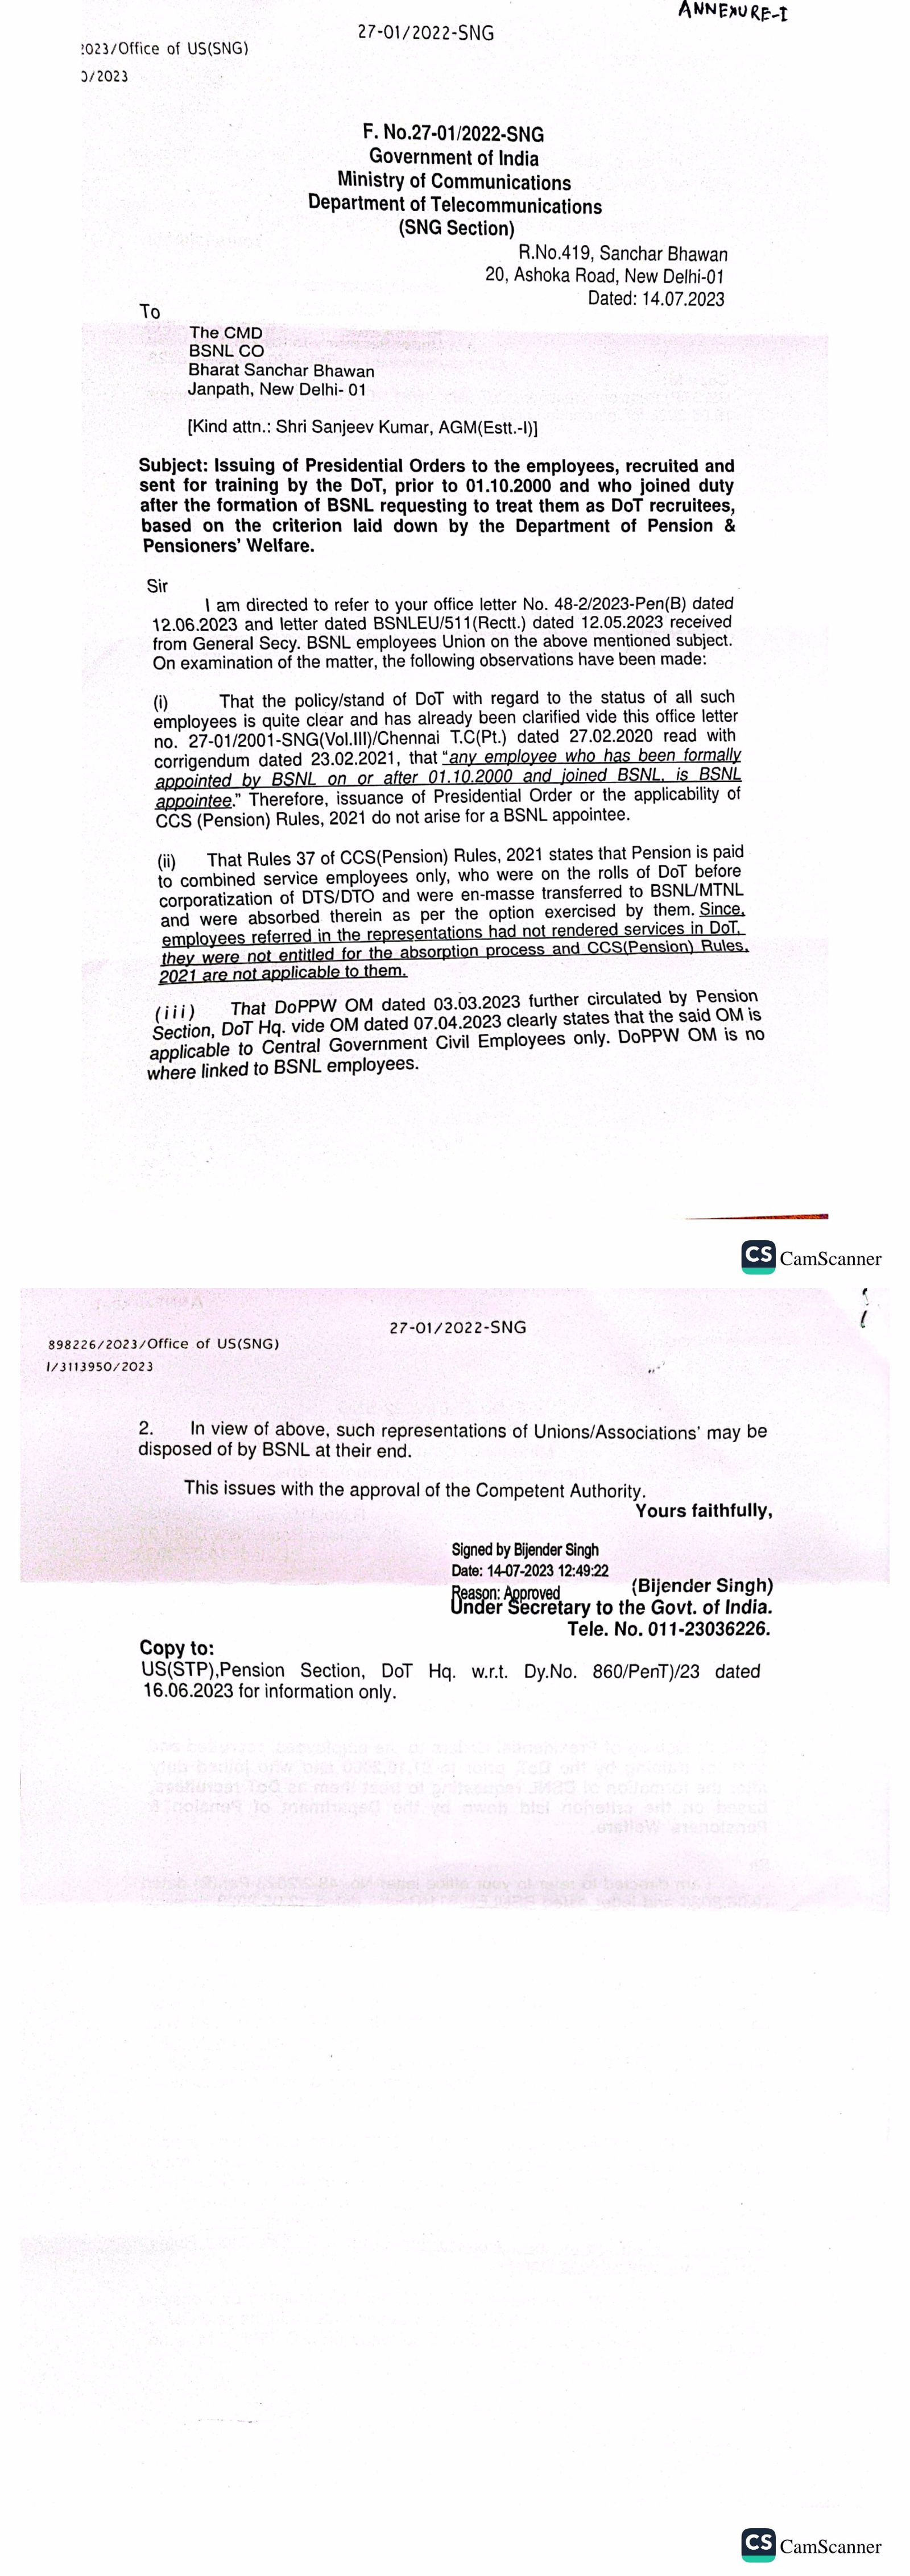 *DoT ने BSNLEU ची मागणी नाकारली आहे की DoT कालावधी दरम्यान जाहिरात केलेल्या / अधिसूचित केलेल्या पदांवर भरती झालेल्या कर्मचाऱ्यांना अध्यक्षीय आदेश जारी करणे.* Image 